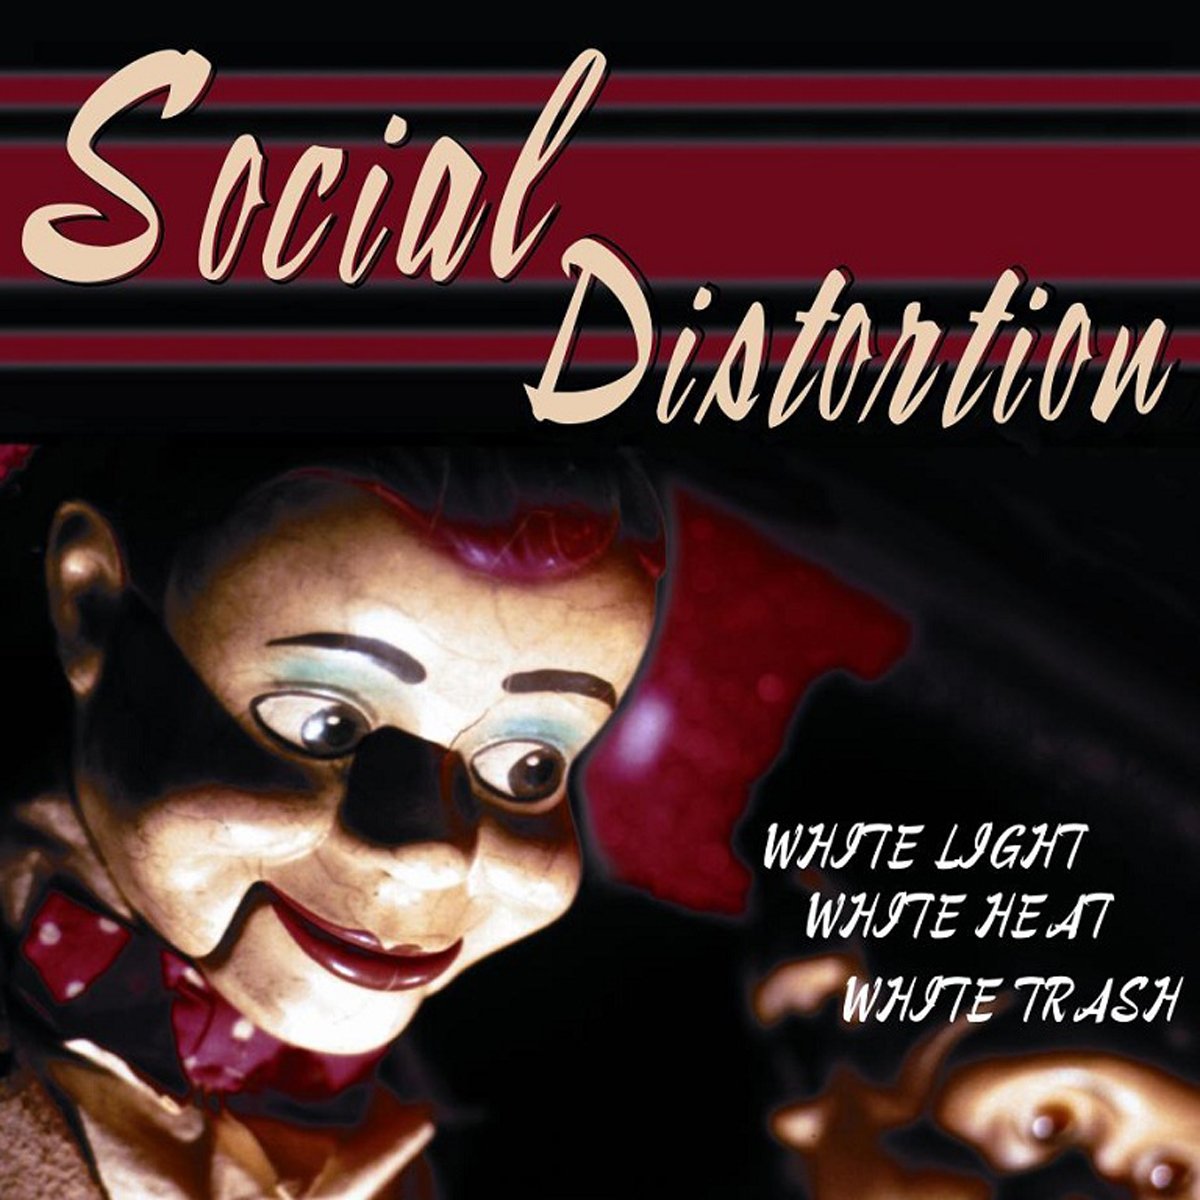 SOCIAL DISTORTION - WHITE TRASH, WHITE LIGHT, WHITE HEAT Vinyl LP